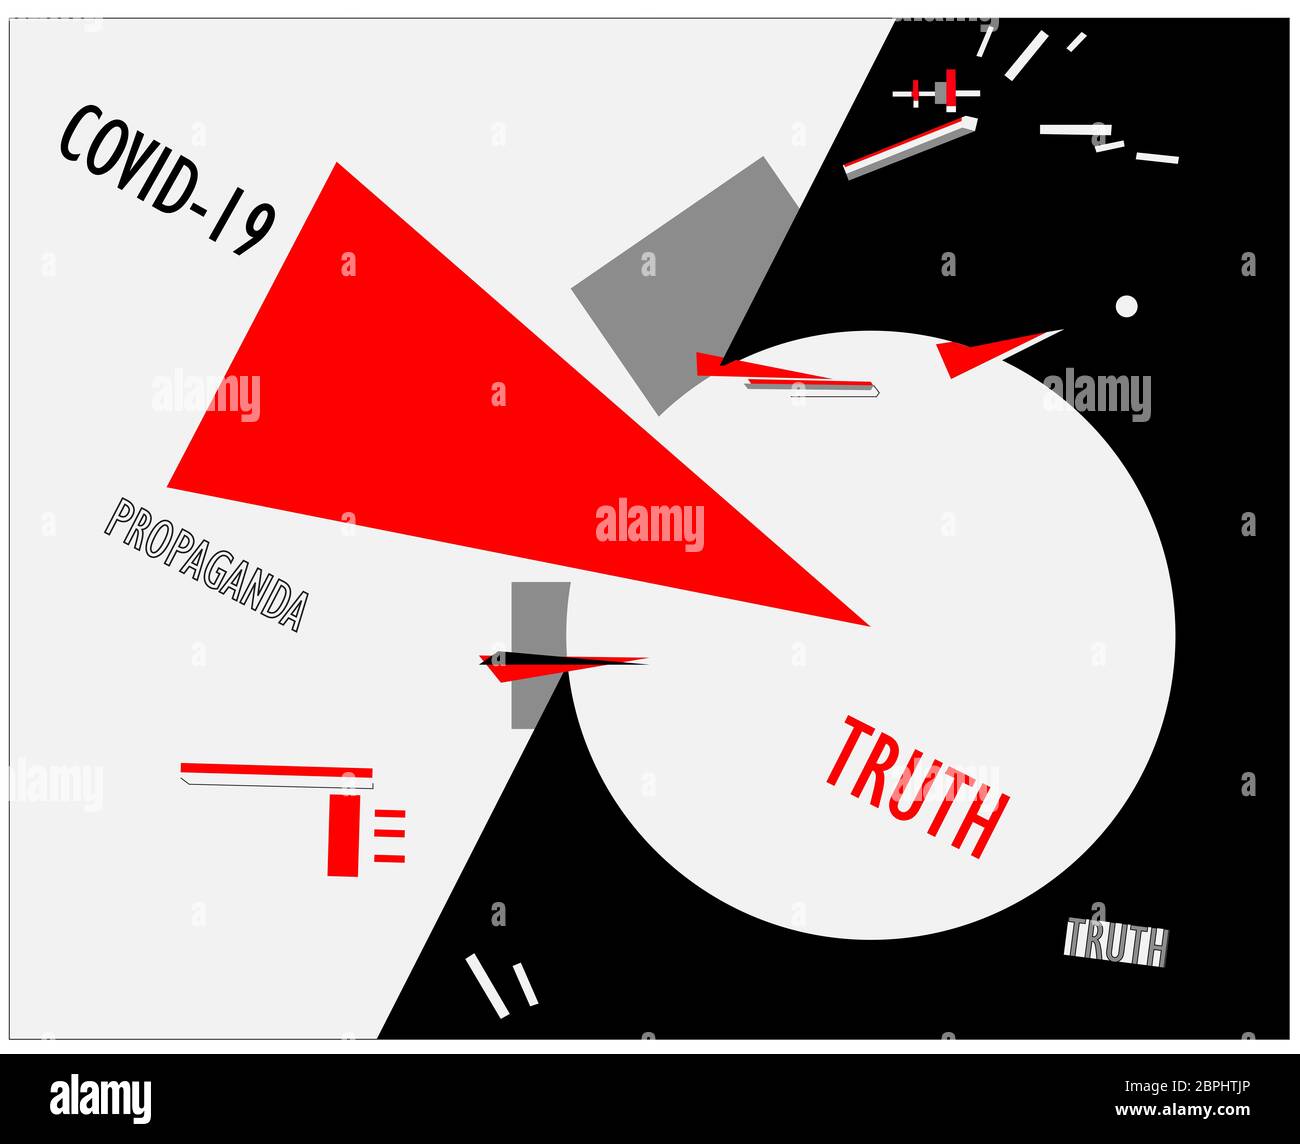 Covid-19 affiche de propagande contre la vérité dans le style d'art contemporain de la suprématie. El Lissitzky Banque D'Images